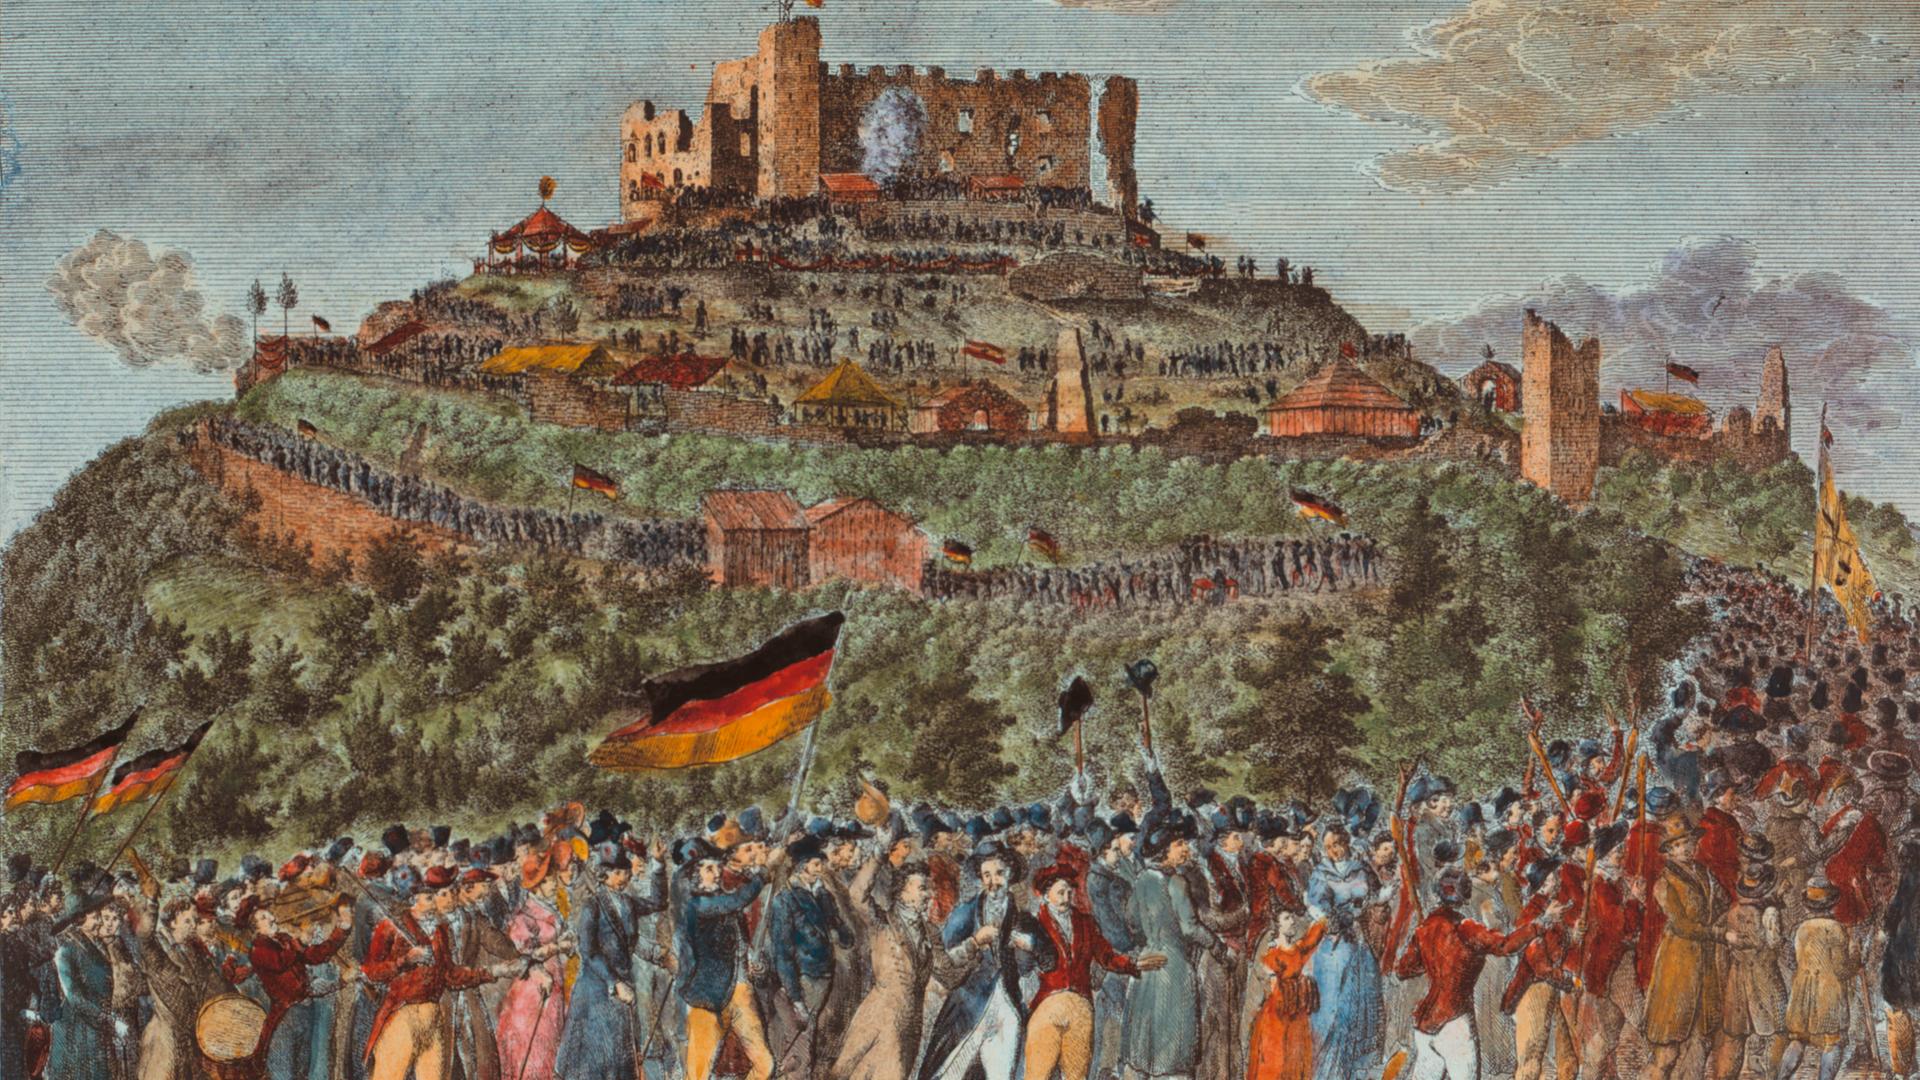 Das Bild aus dem Jahr 1832 zeigt eine Panorama-Perspektive auf das Schloss Hambach mit einem langen Menschenzug, der darauf zuhält. Die Leute schwenken Fahnen in den Farben Schwarz-Rot-Gold.